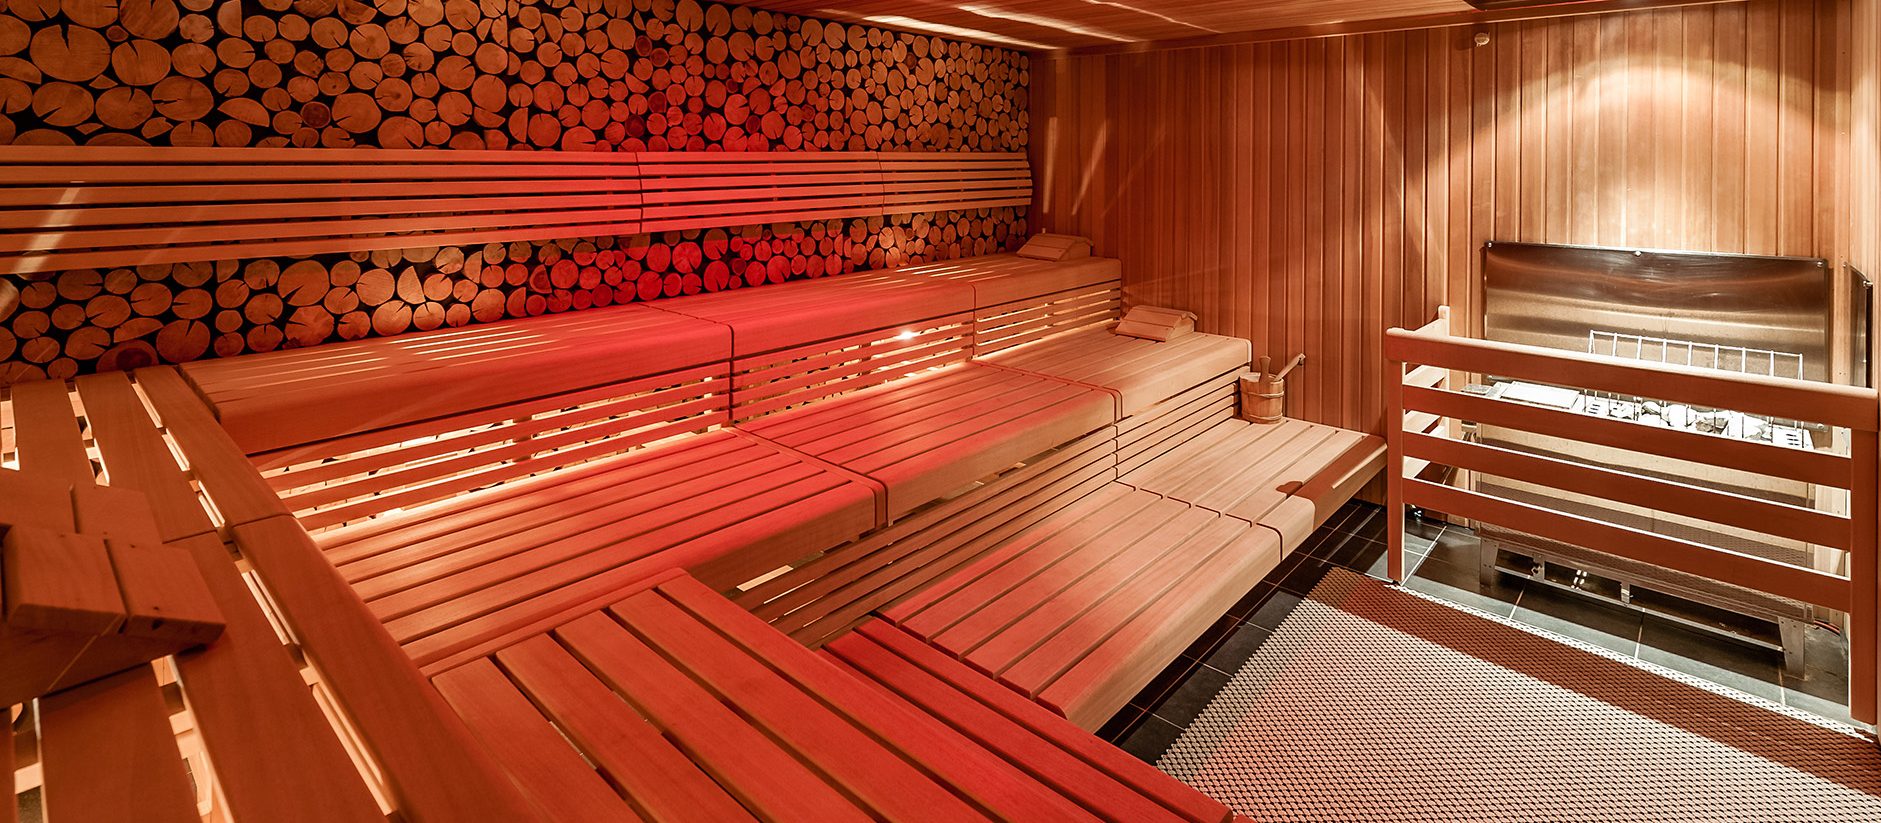 Sauna infrarouges allumé